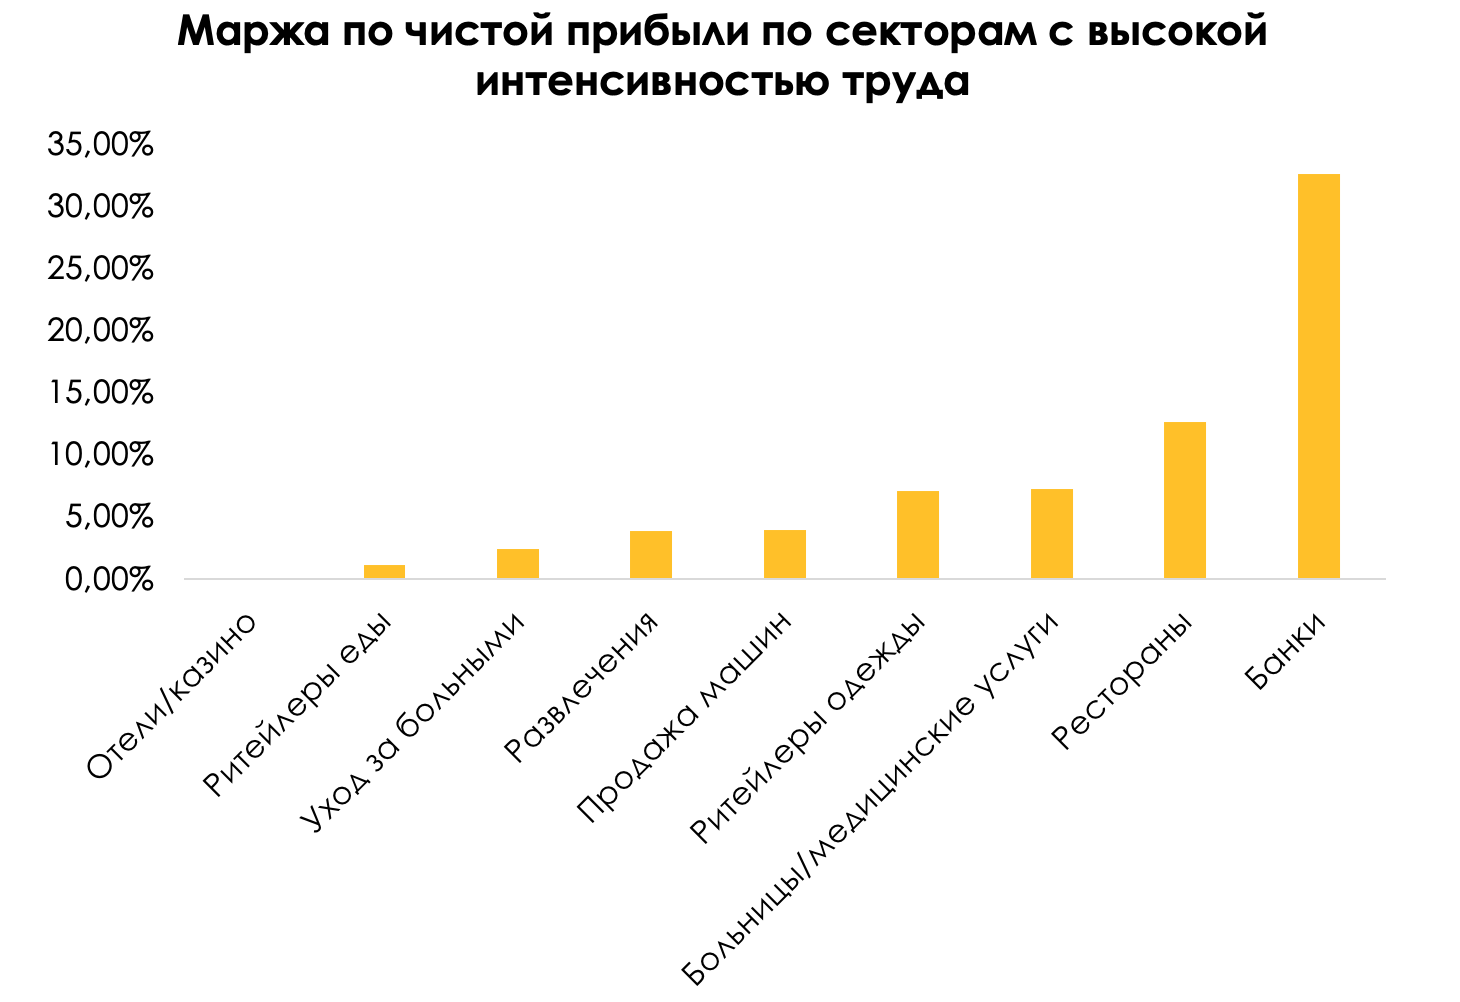 Наиболее высокая интенсивность в. Интенсивность труда в России.